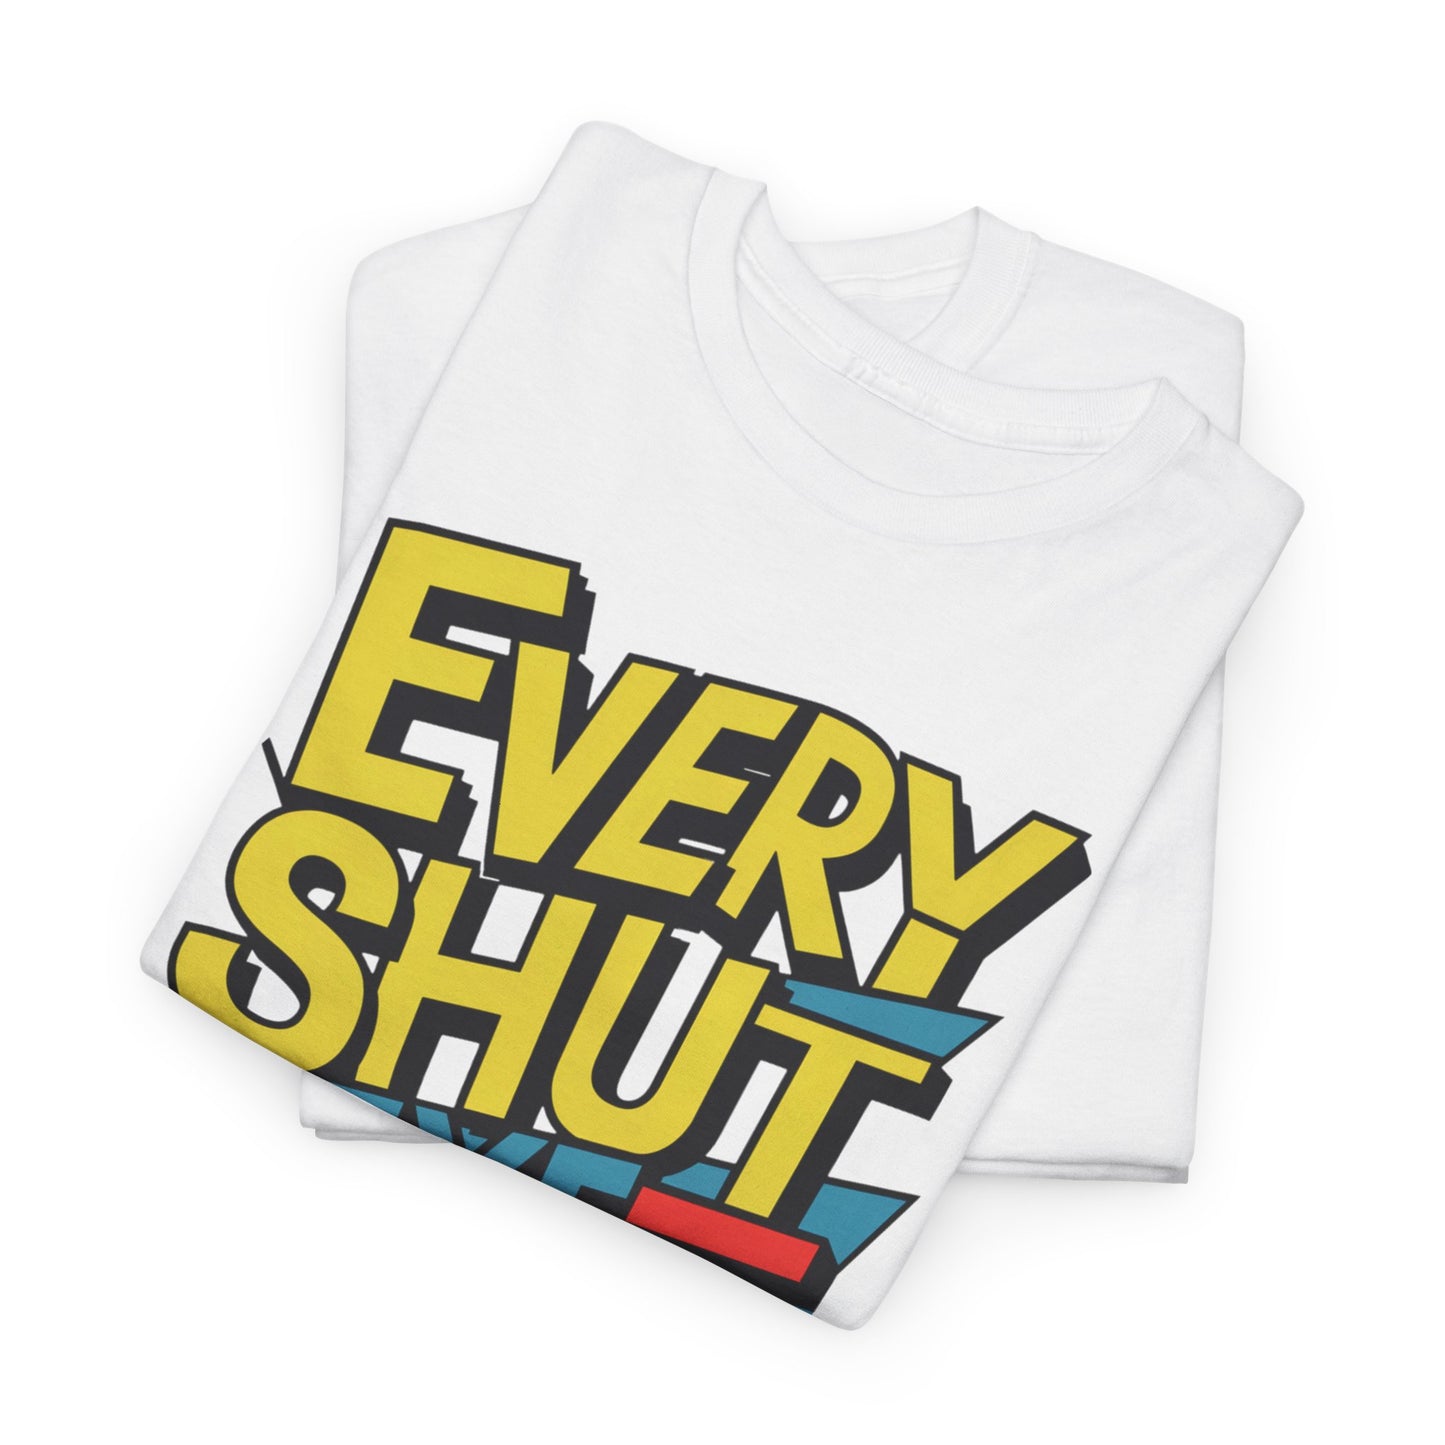 Every Shut Eye Aint Asleep -- T-shirt